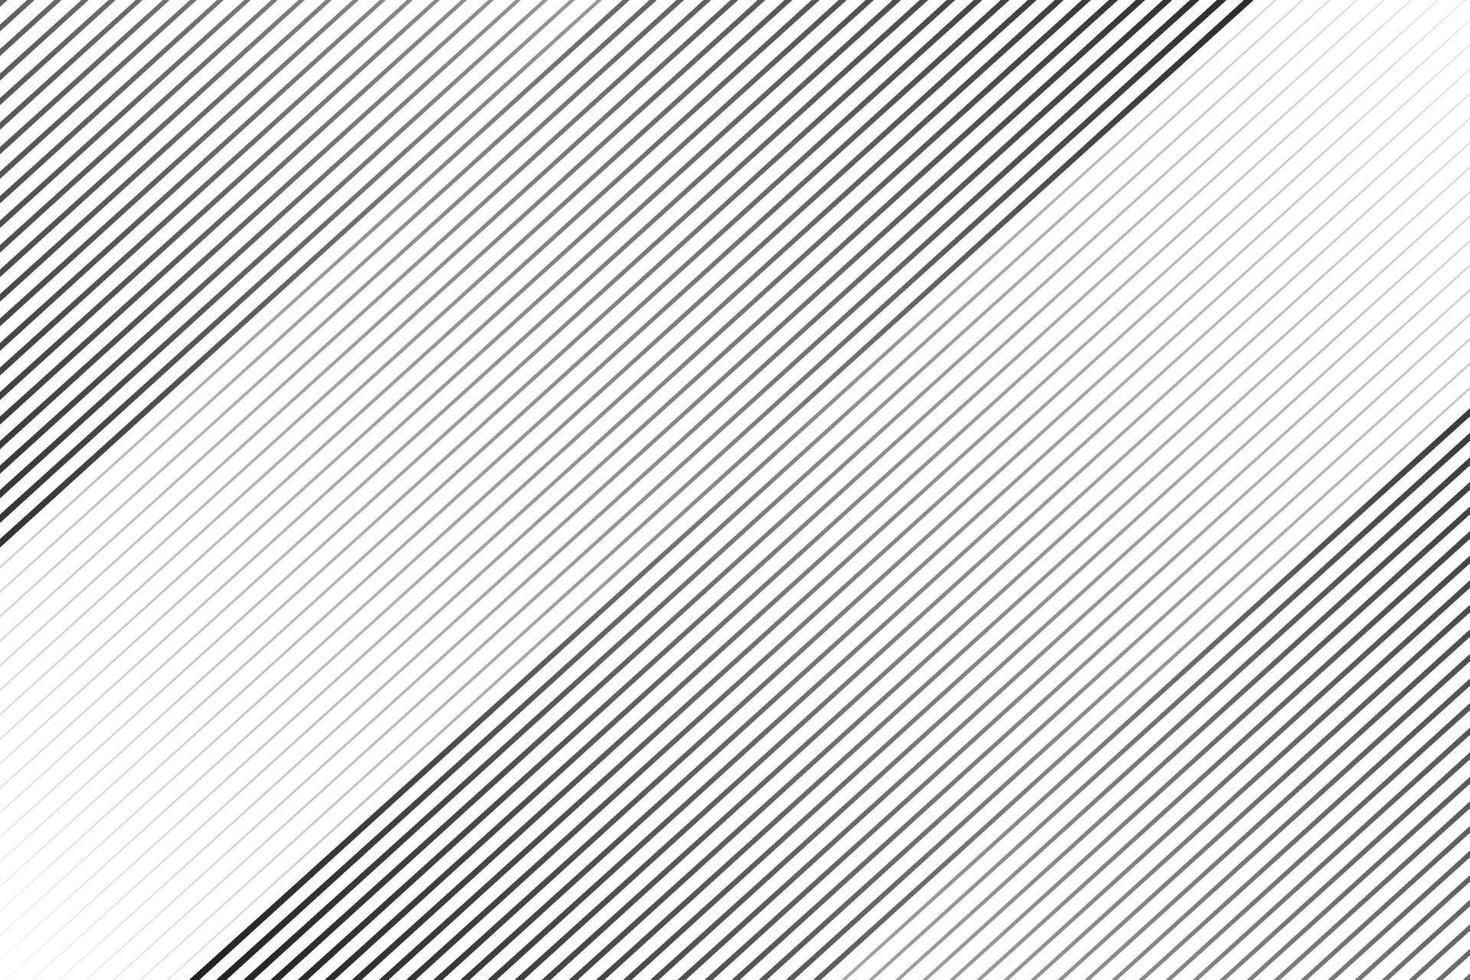 abstrakt svart och vit lutning rand hetero linje mönster. vektor